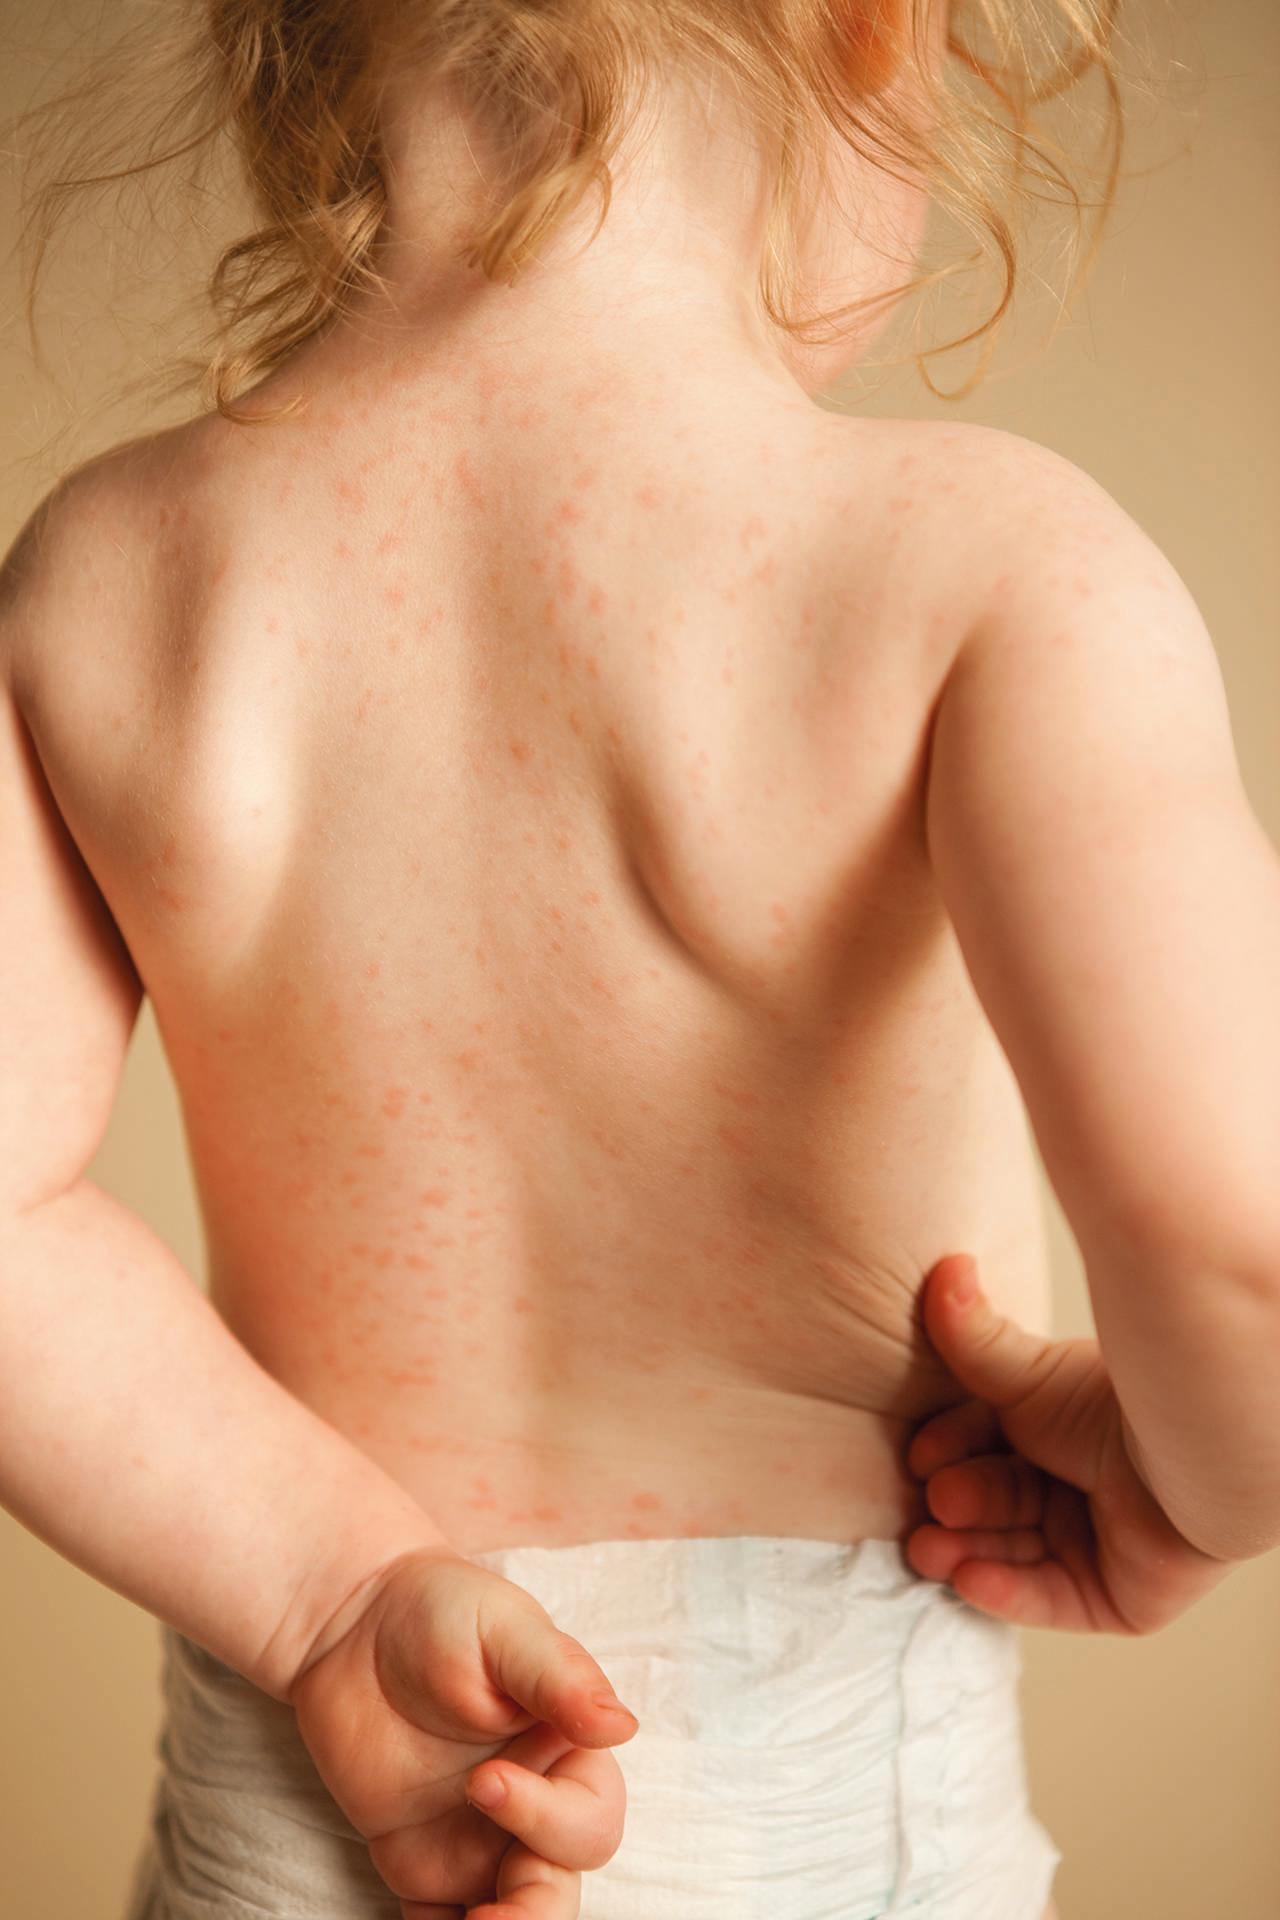 Farbfoto eines zweijährigen Mädchens mit einem Hautausschlag aufgrund einer allergischen Reaktion auf das Antibiotikum Amoxicillin.